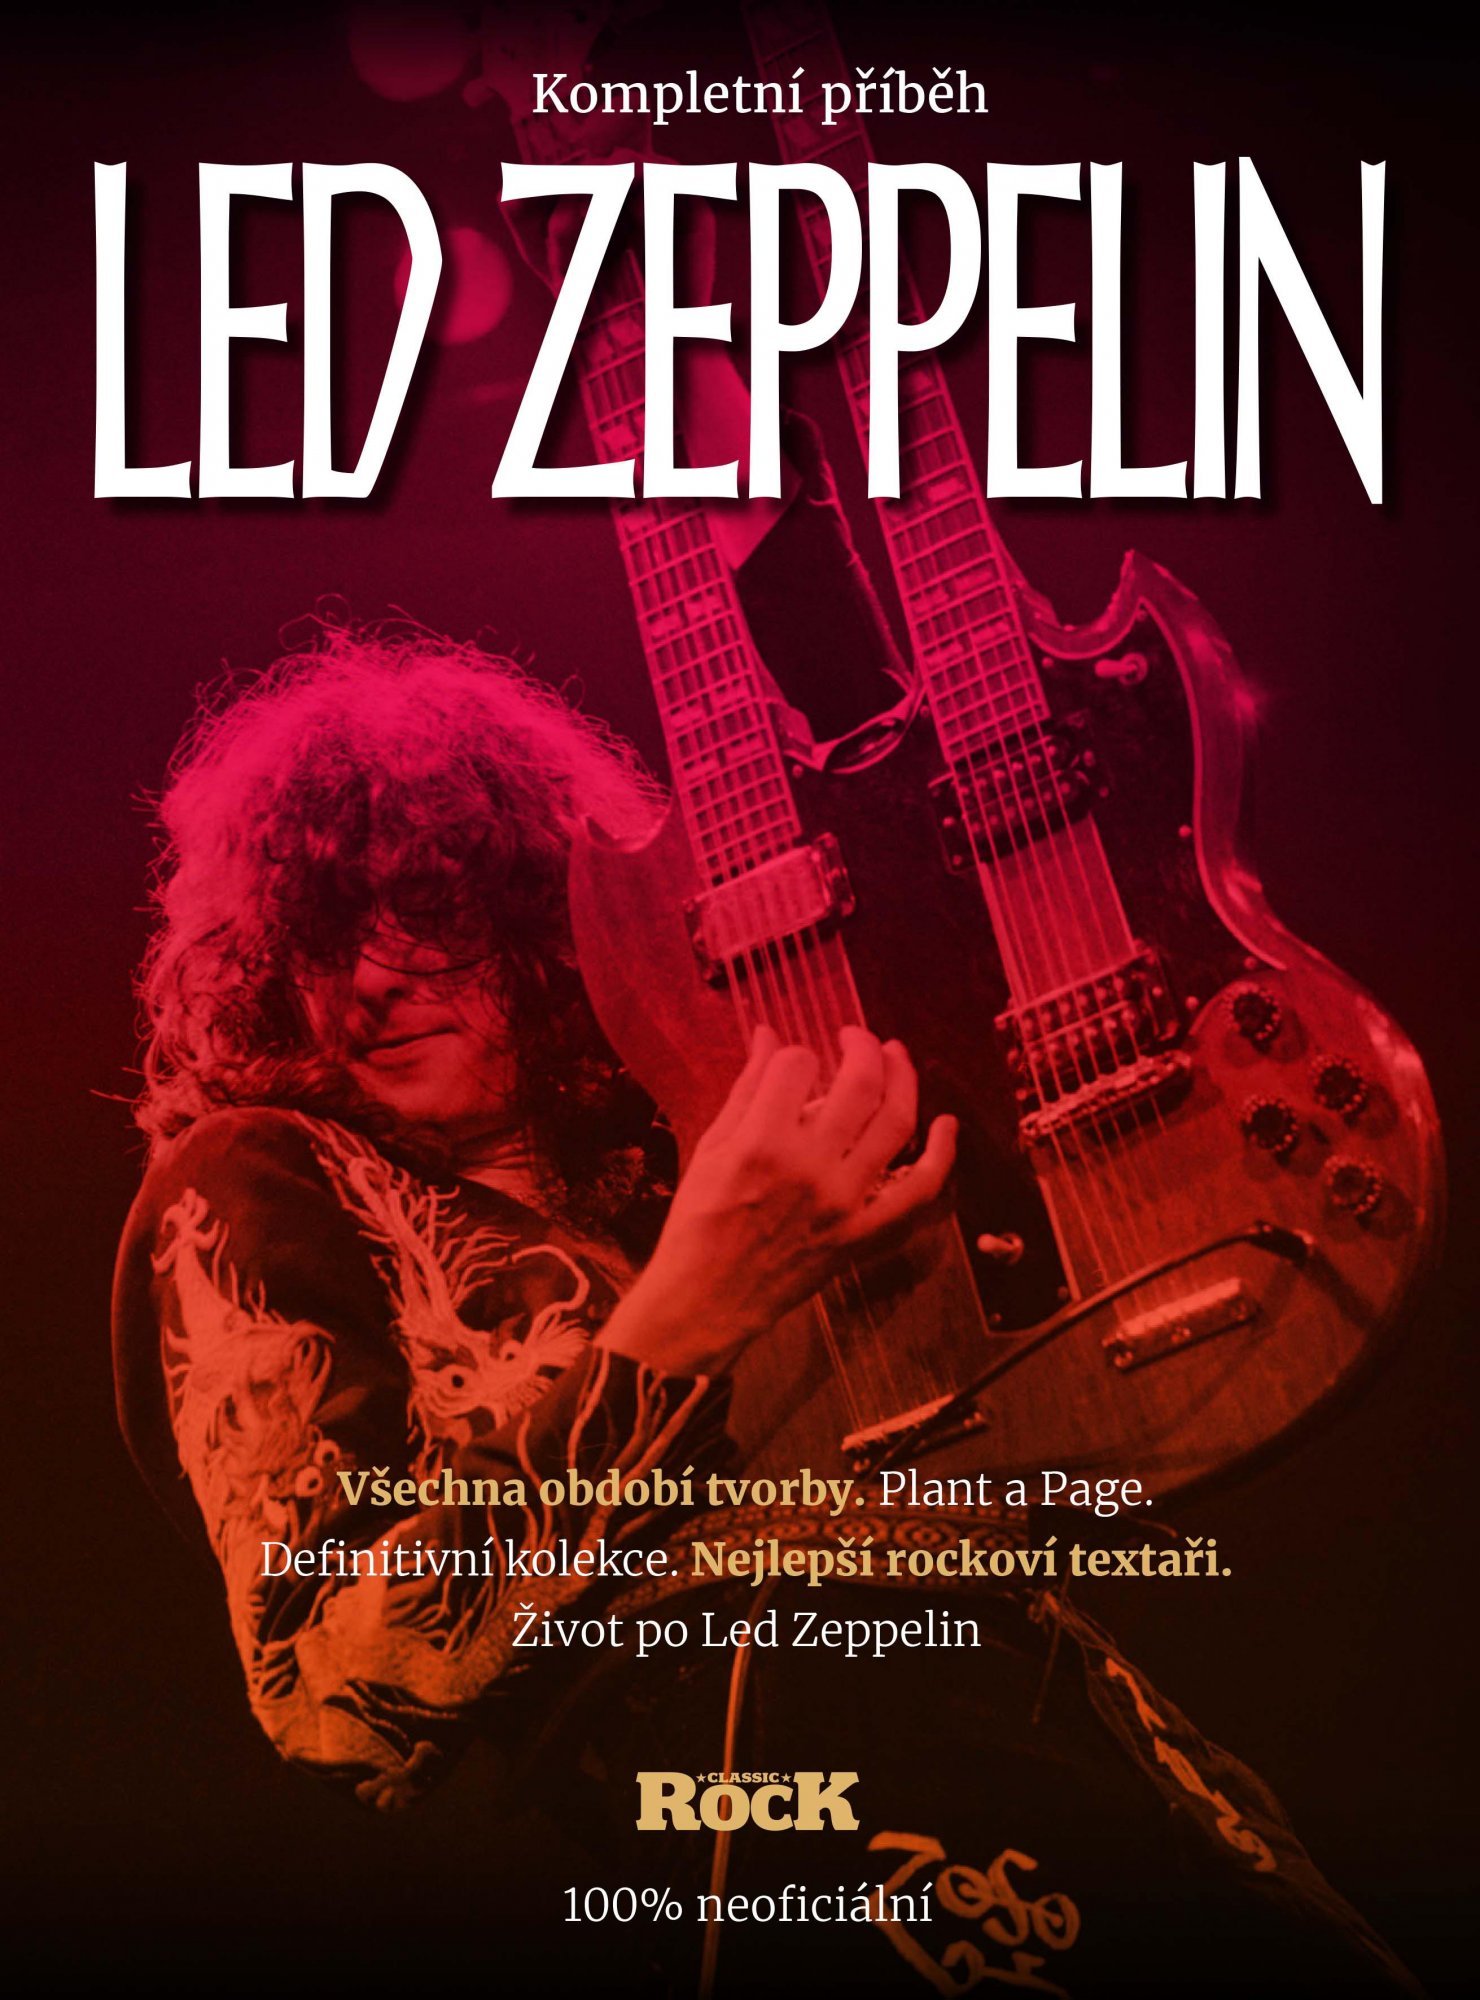 Led Zeppelin - Kompletní příběh - kolektiv autorů